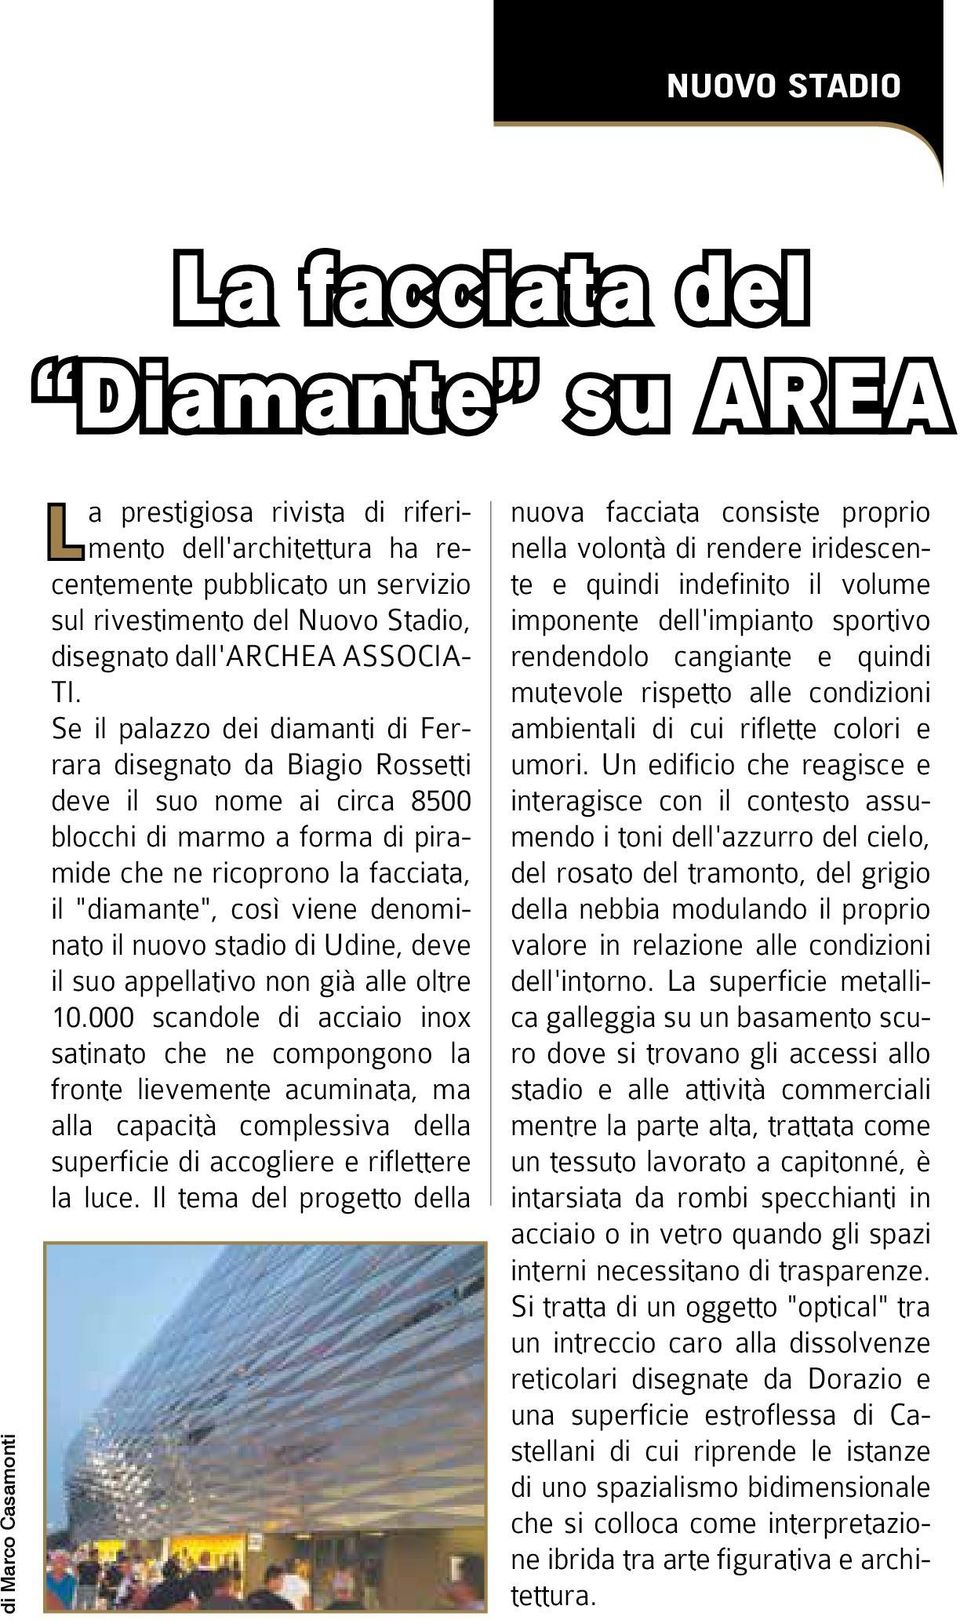 Se il palazzo dei diamanti di Ferrara disegnato da Biagio Rossetti deve il suo nome ai circa 8500 blocchi di marmo a forma di piramide che ne ricoprono la facciata, il "diamante", così viene